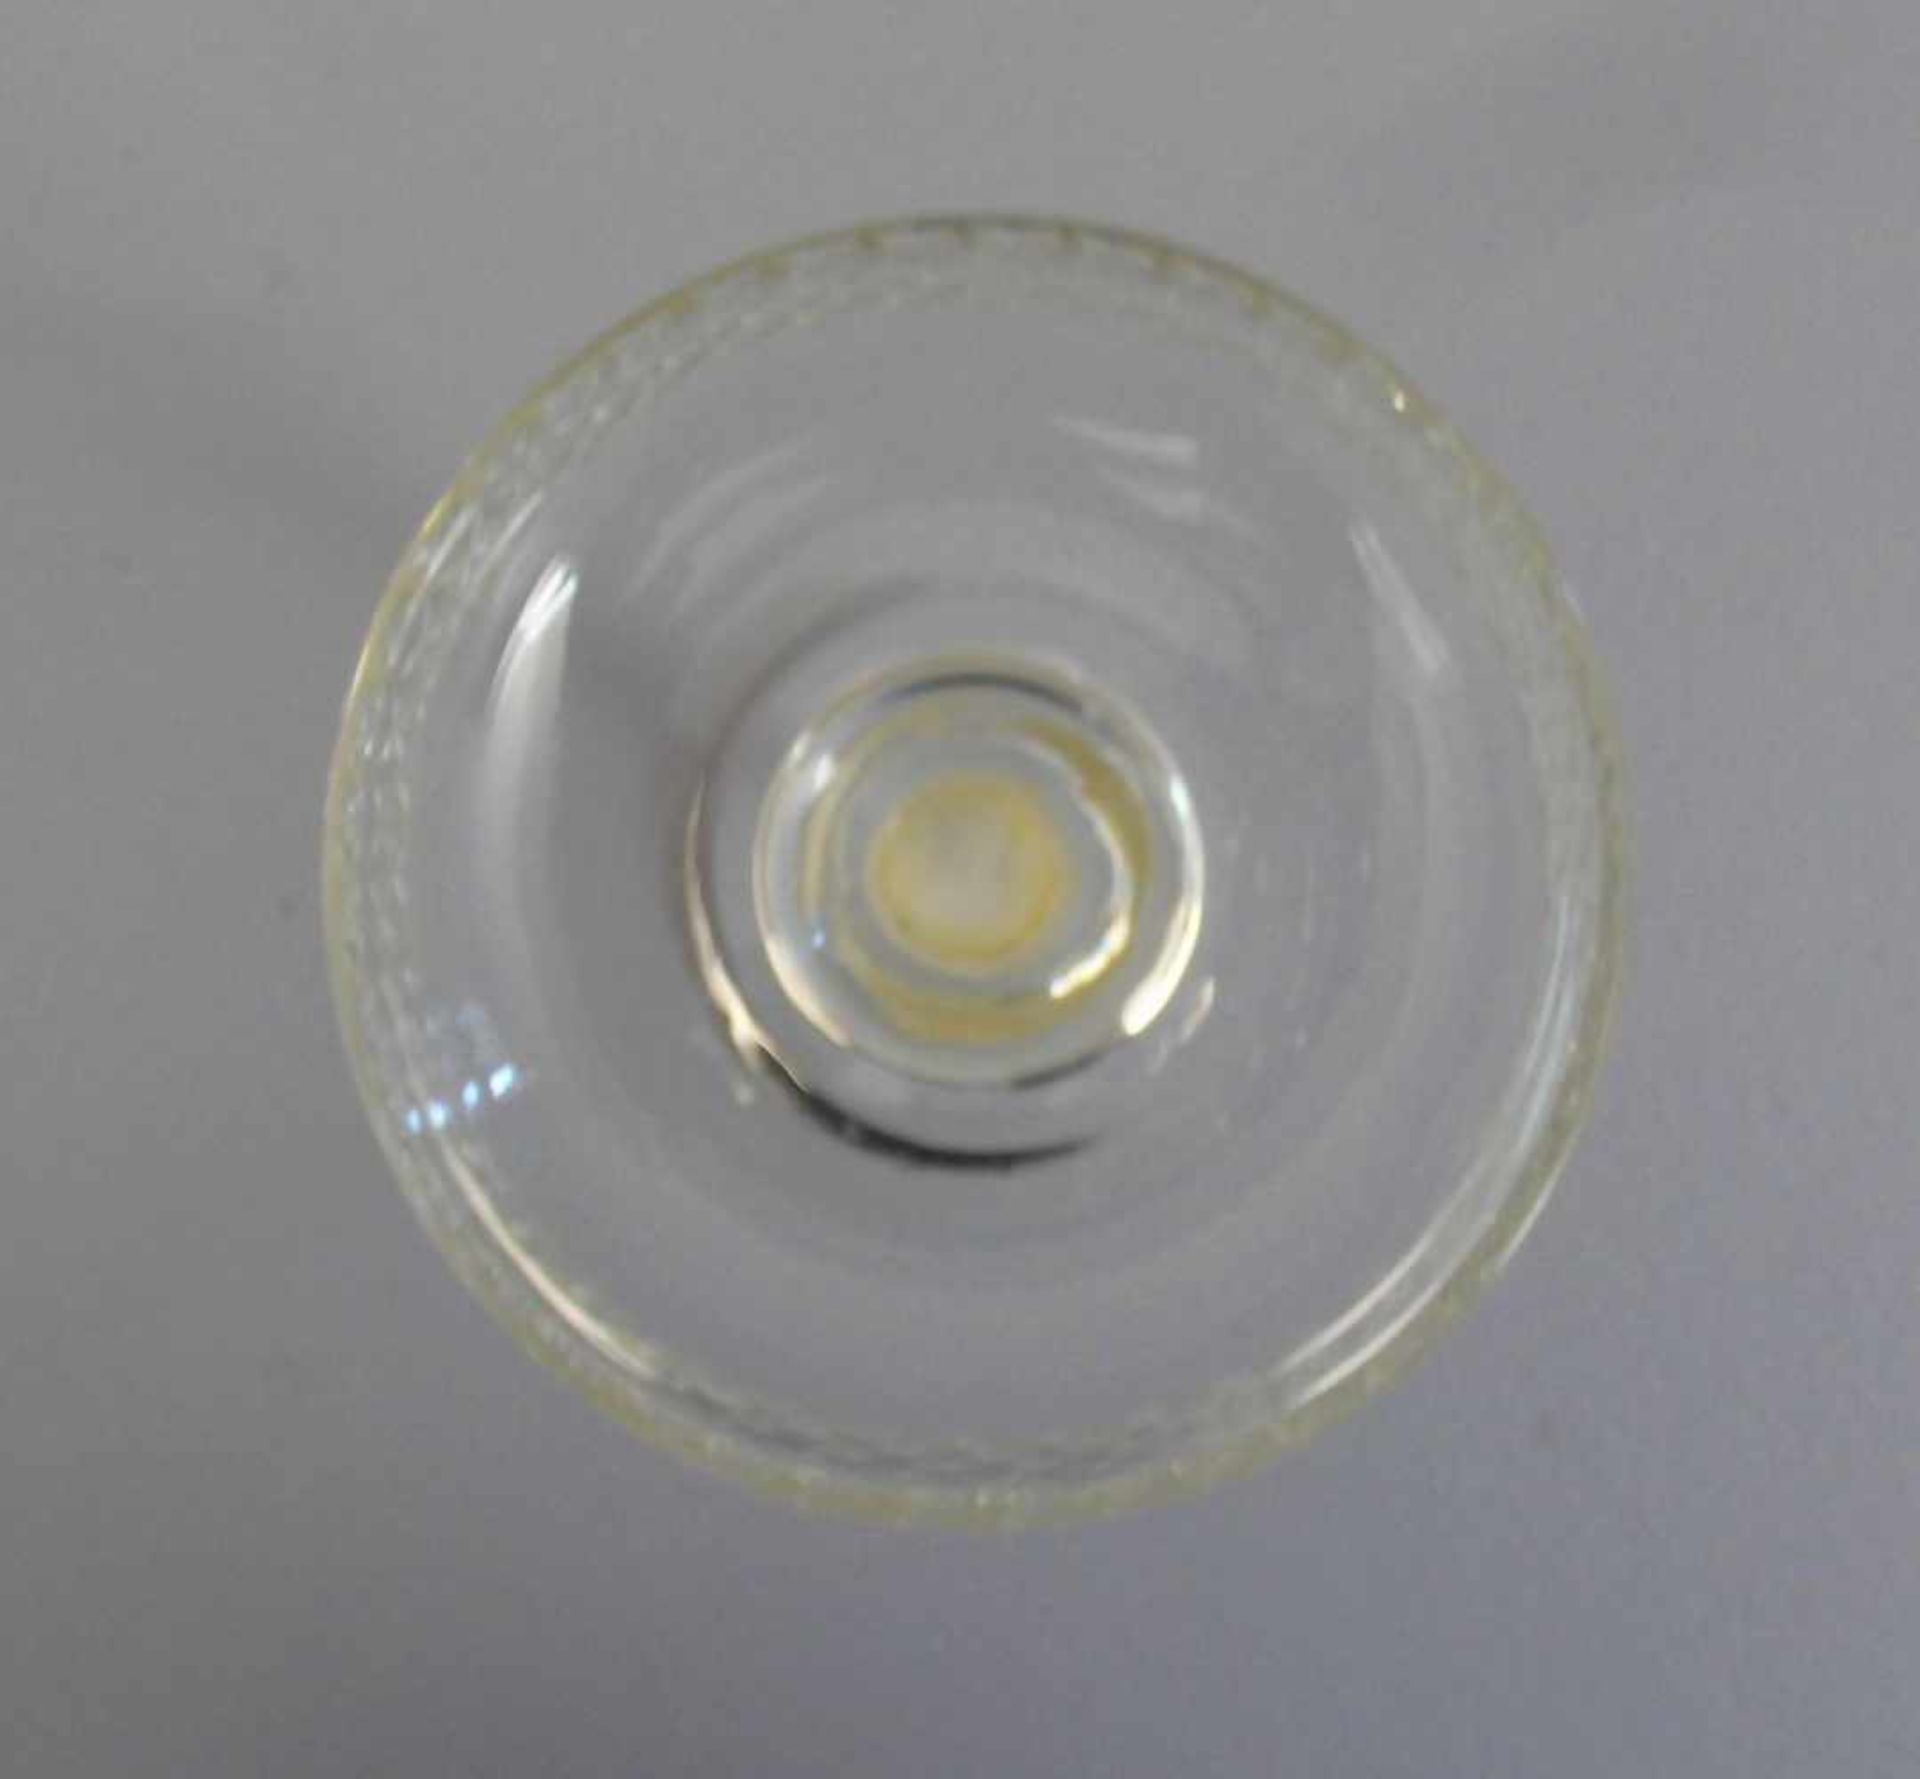 SCHALE MIT SILBERNEM FUSS / TISCHLEUCHTER, 925er Silber, gepunzt mit Feingehaltsangabe, - Bild 2 aus 3